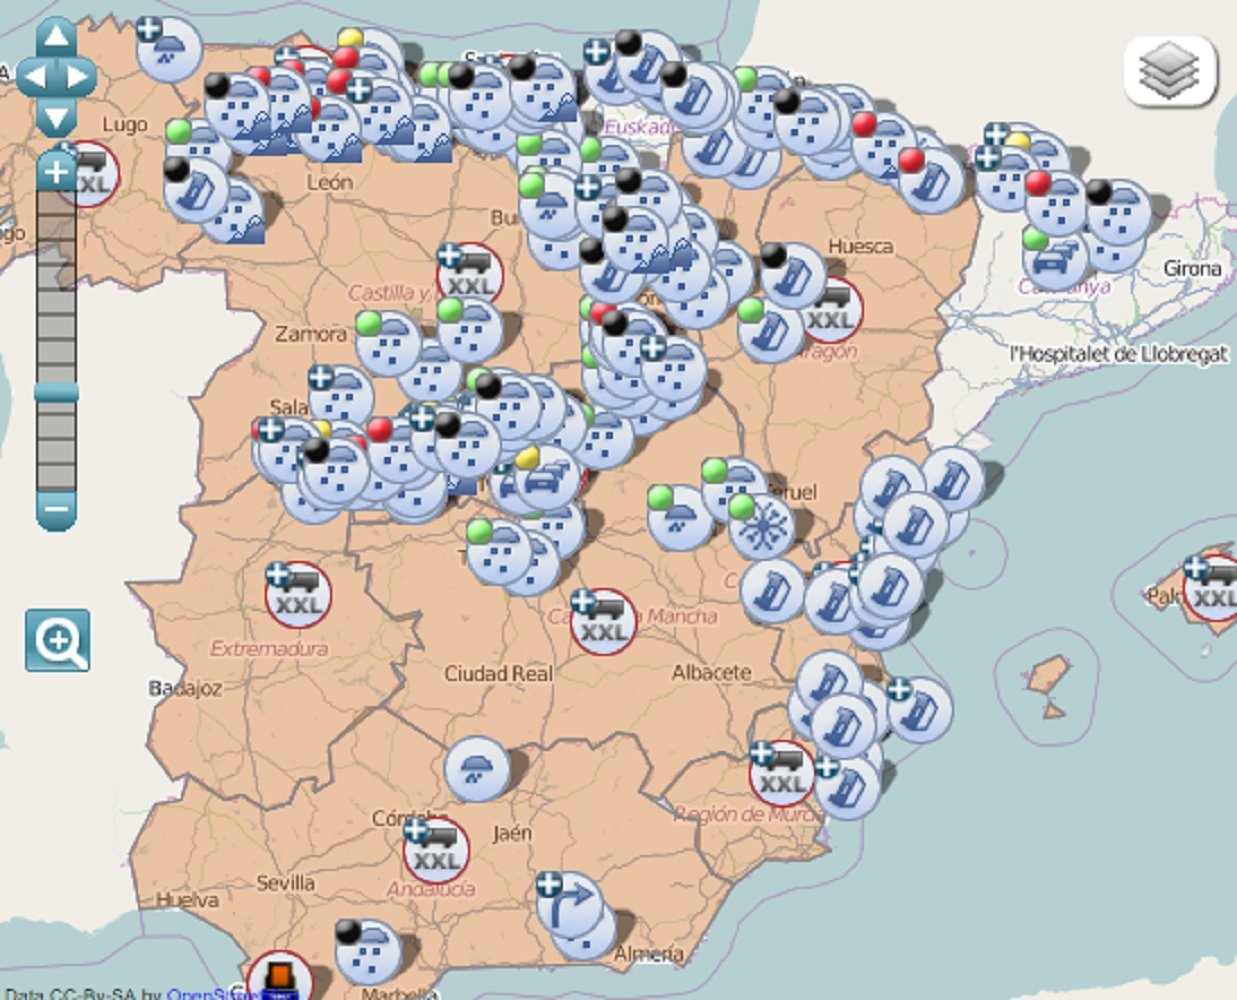 Catalunya ja és independent als mapes de la Direcció General de Trànsit